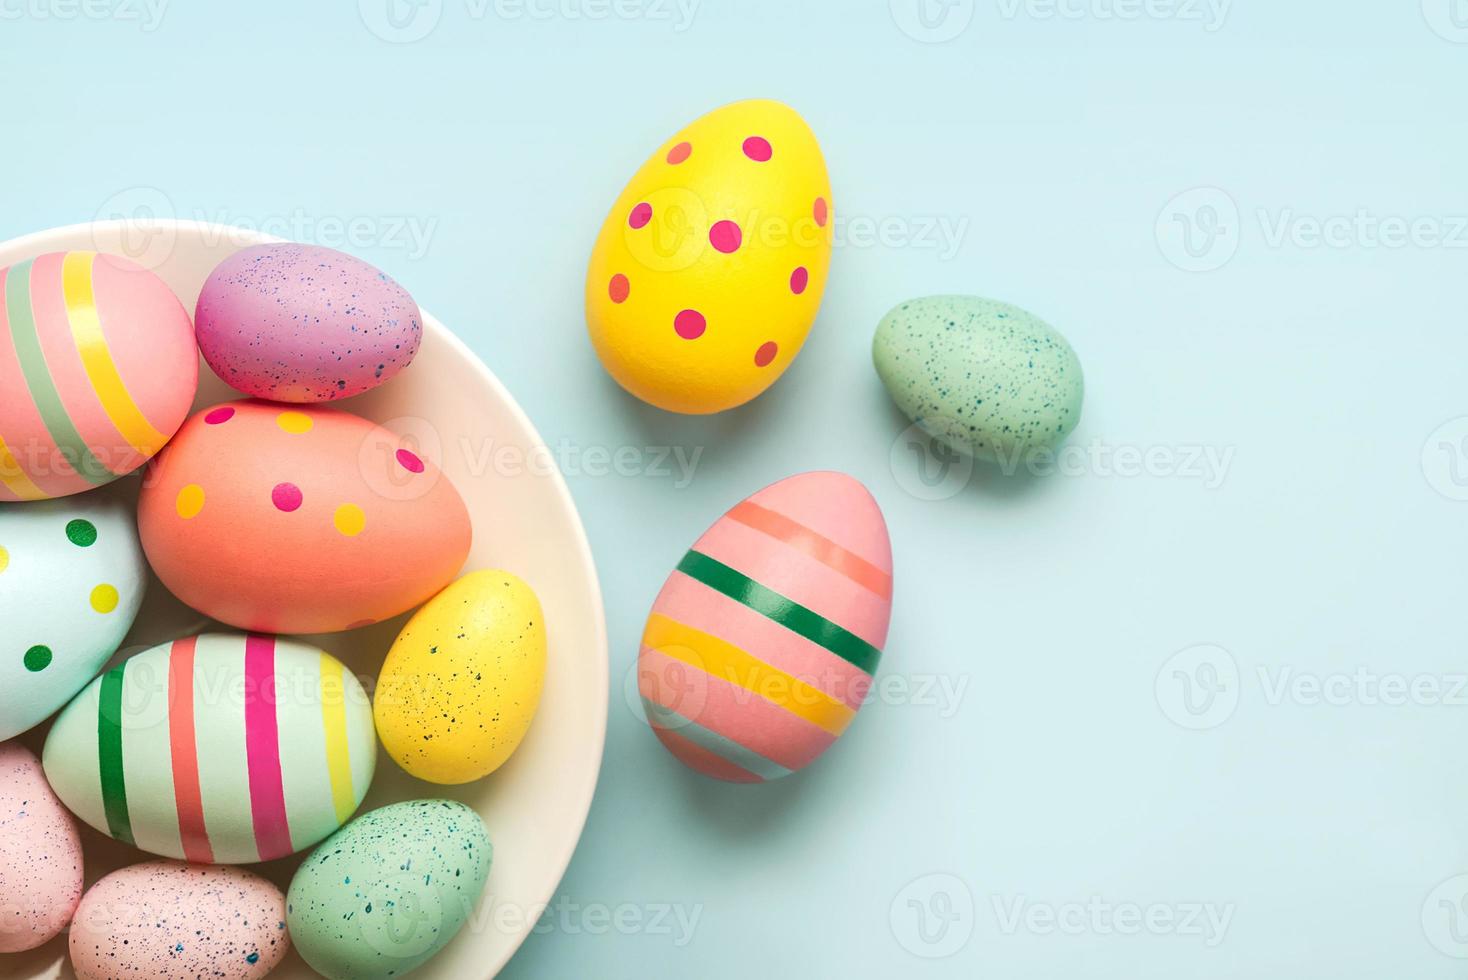 glad påsk. färgade påskmålade ägg i en skål foto